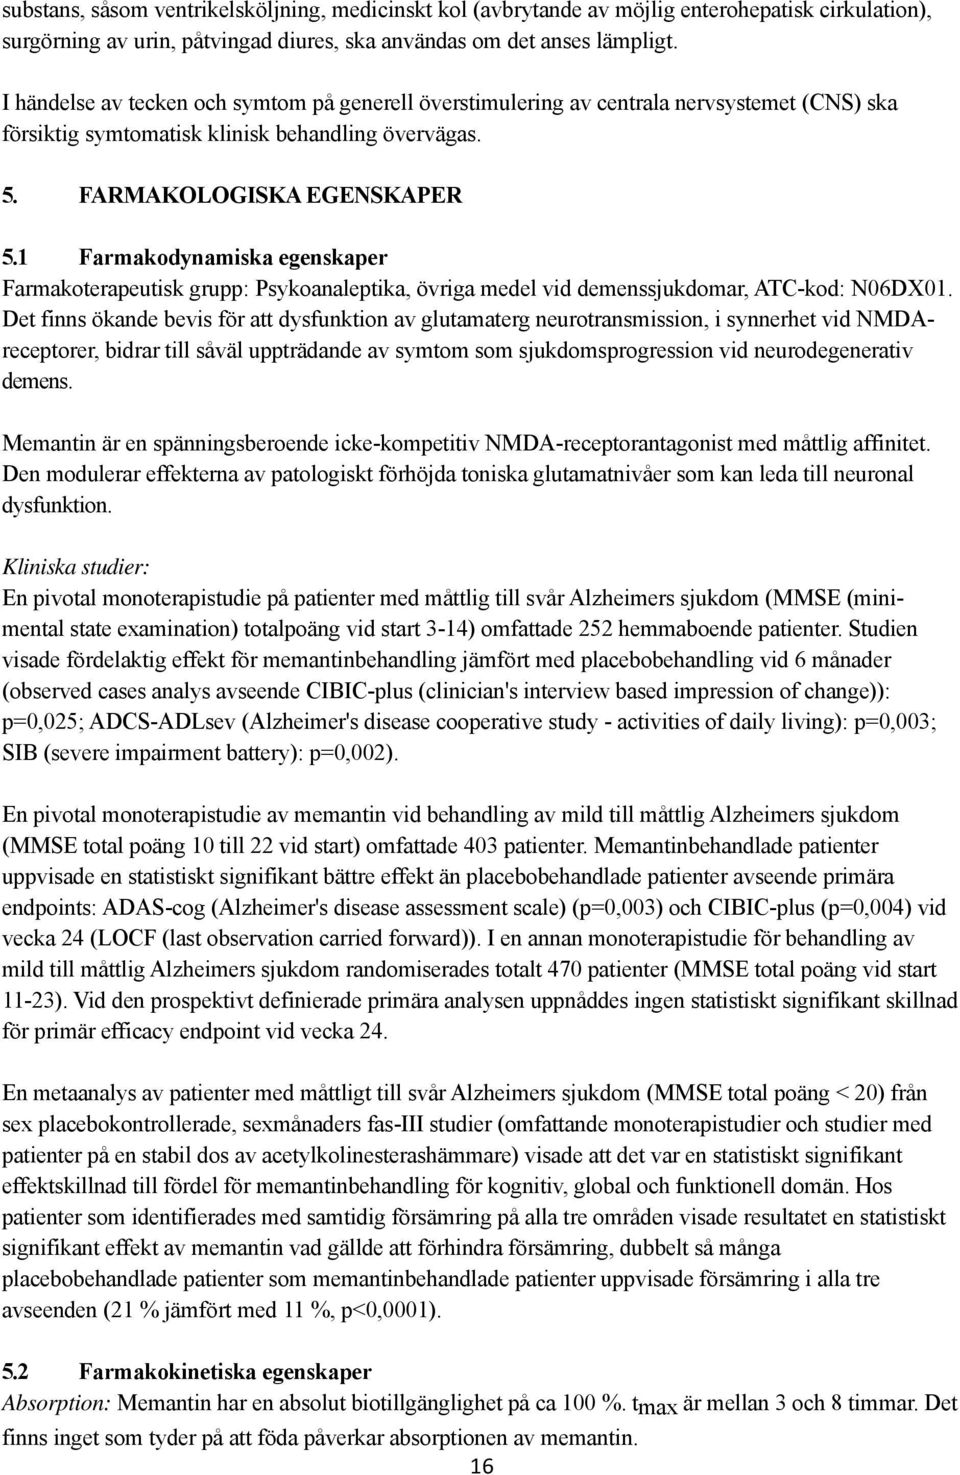 1 Farmakodynamiska egenskaper Farmakoterapeutisk grupp: Psykoanaleptika, övriga medel vid demenssjukdomar, ATC-kod: N06DX01.